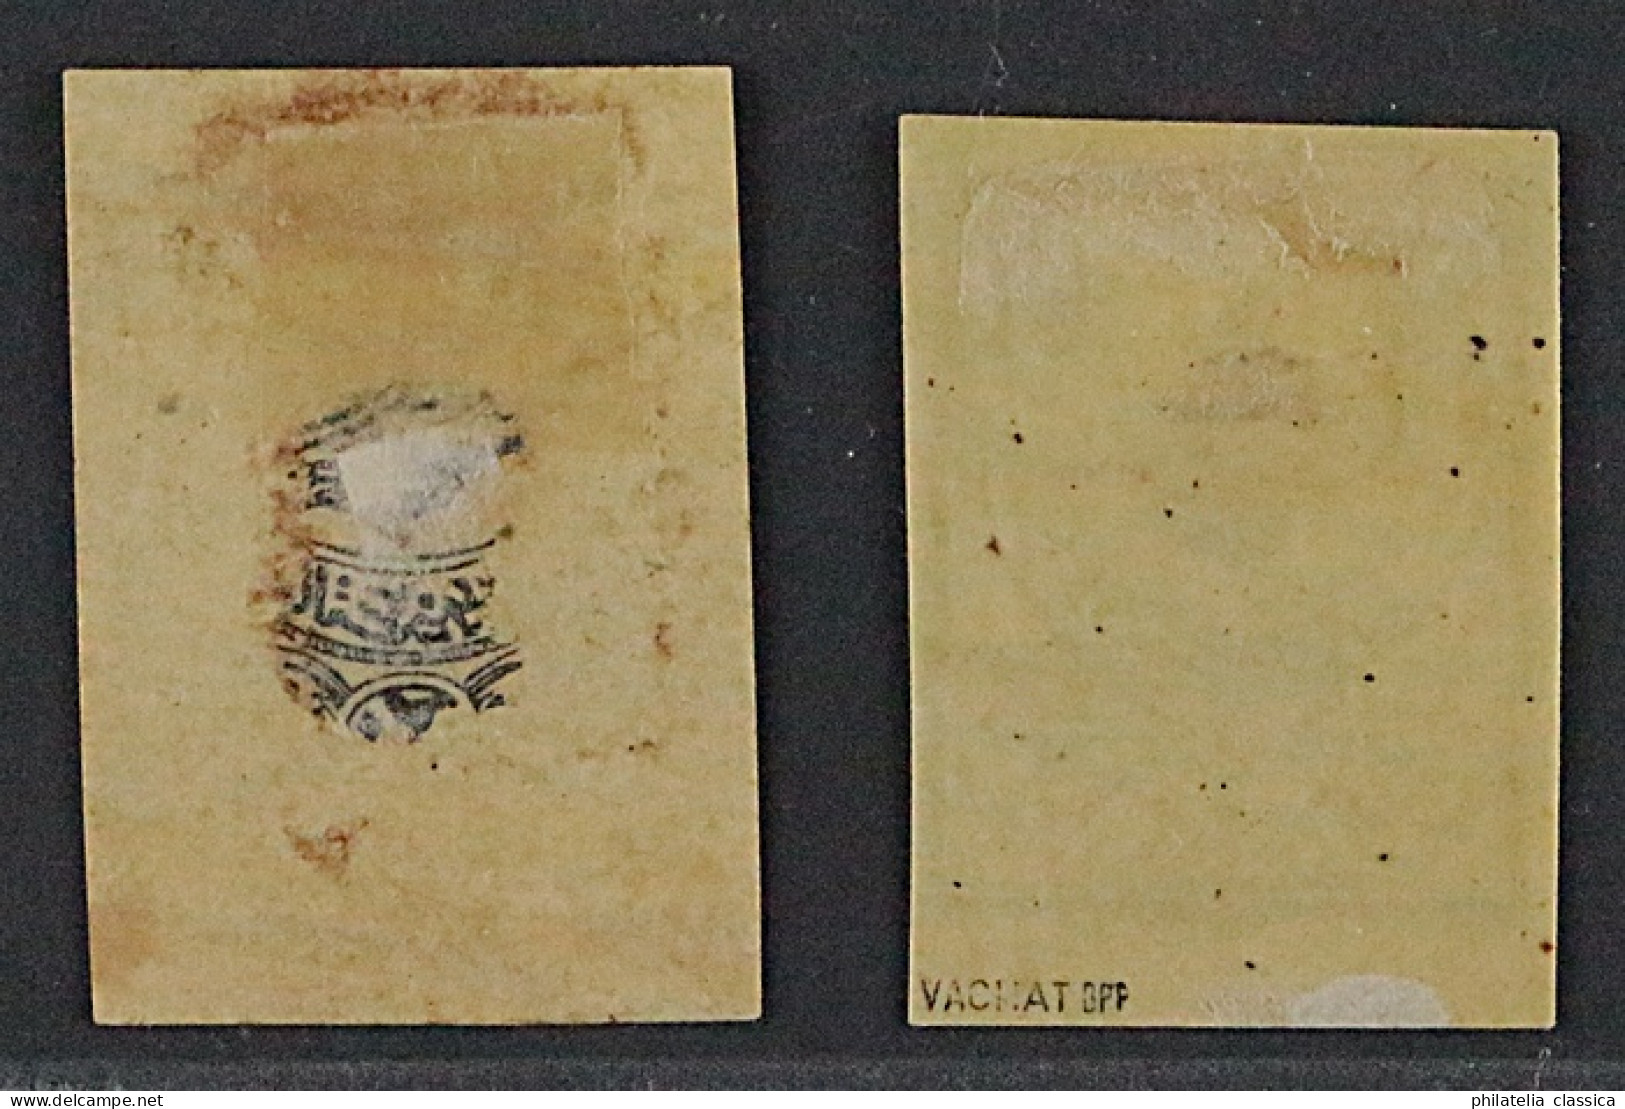 Türkei 1 Y III A + B * 1863, 20 Pa. Beide Farben, Ungebraucht, Geprüft KW 700,-€ - Unused Stamps